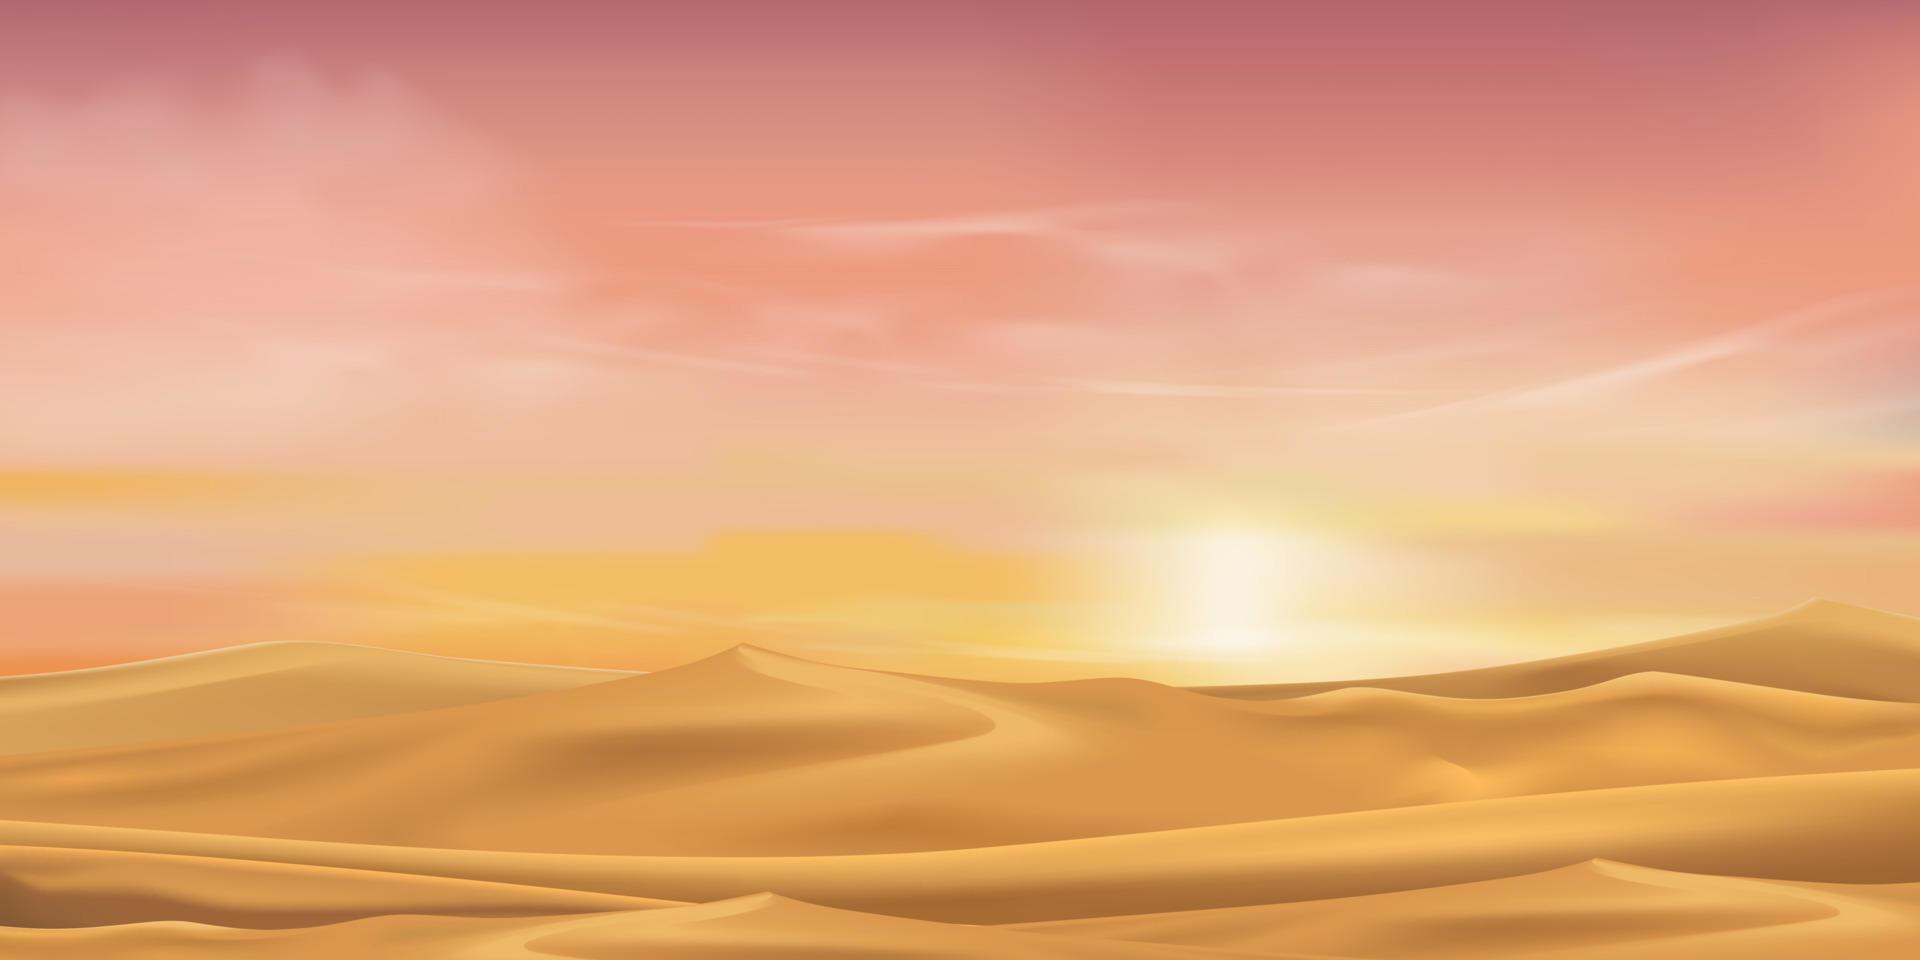 dunas de arena del paisaje desértico con amanecer matutino en naranja, amarillo, cielo rosa, dibujos animados vectoriales desierto seco y caliente con puesta de sol crepuscular por la noche, fondo natural con colinas arenosas escena de paralaje en otoño vector